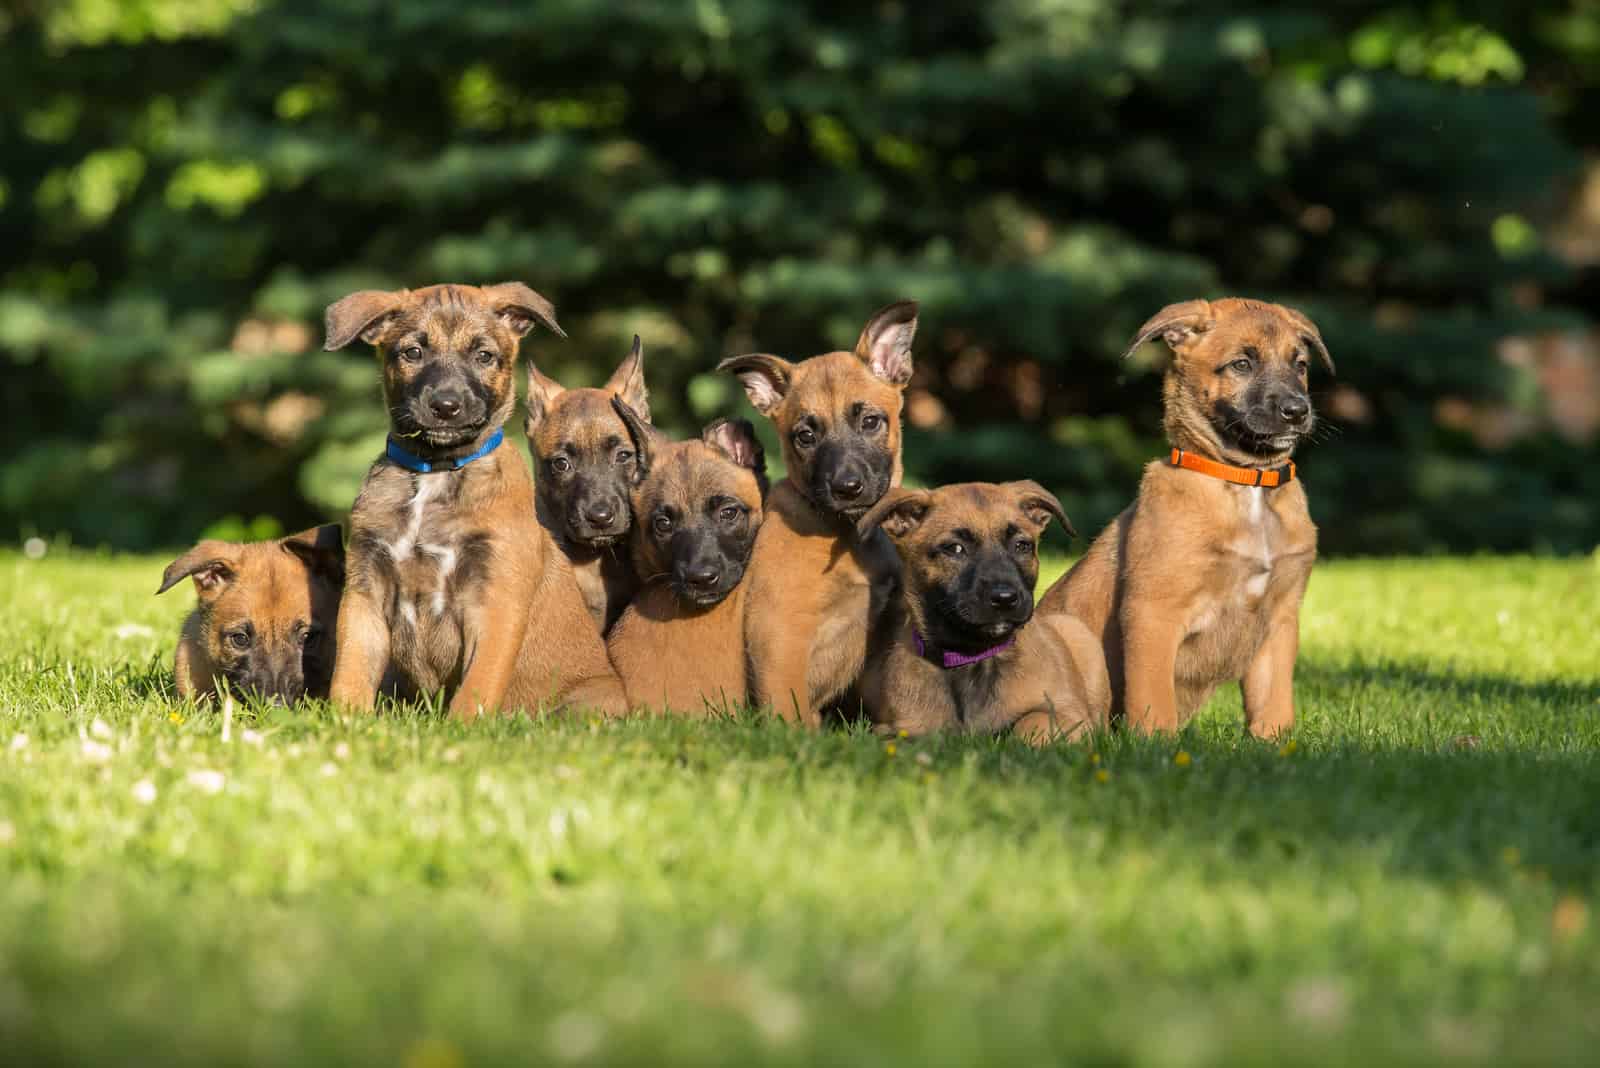 Belgian Malinois puppies sitting on grass